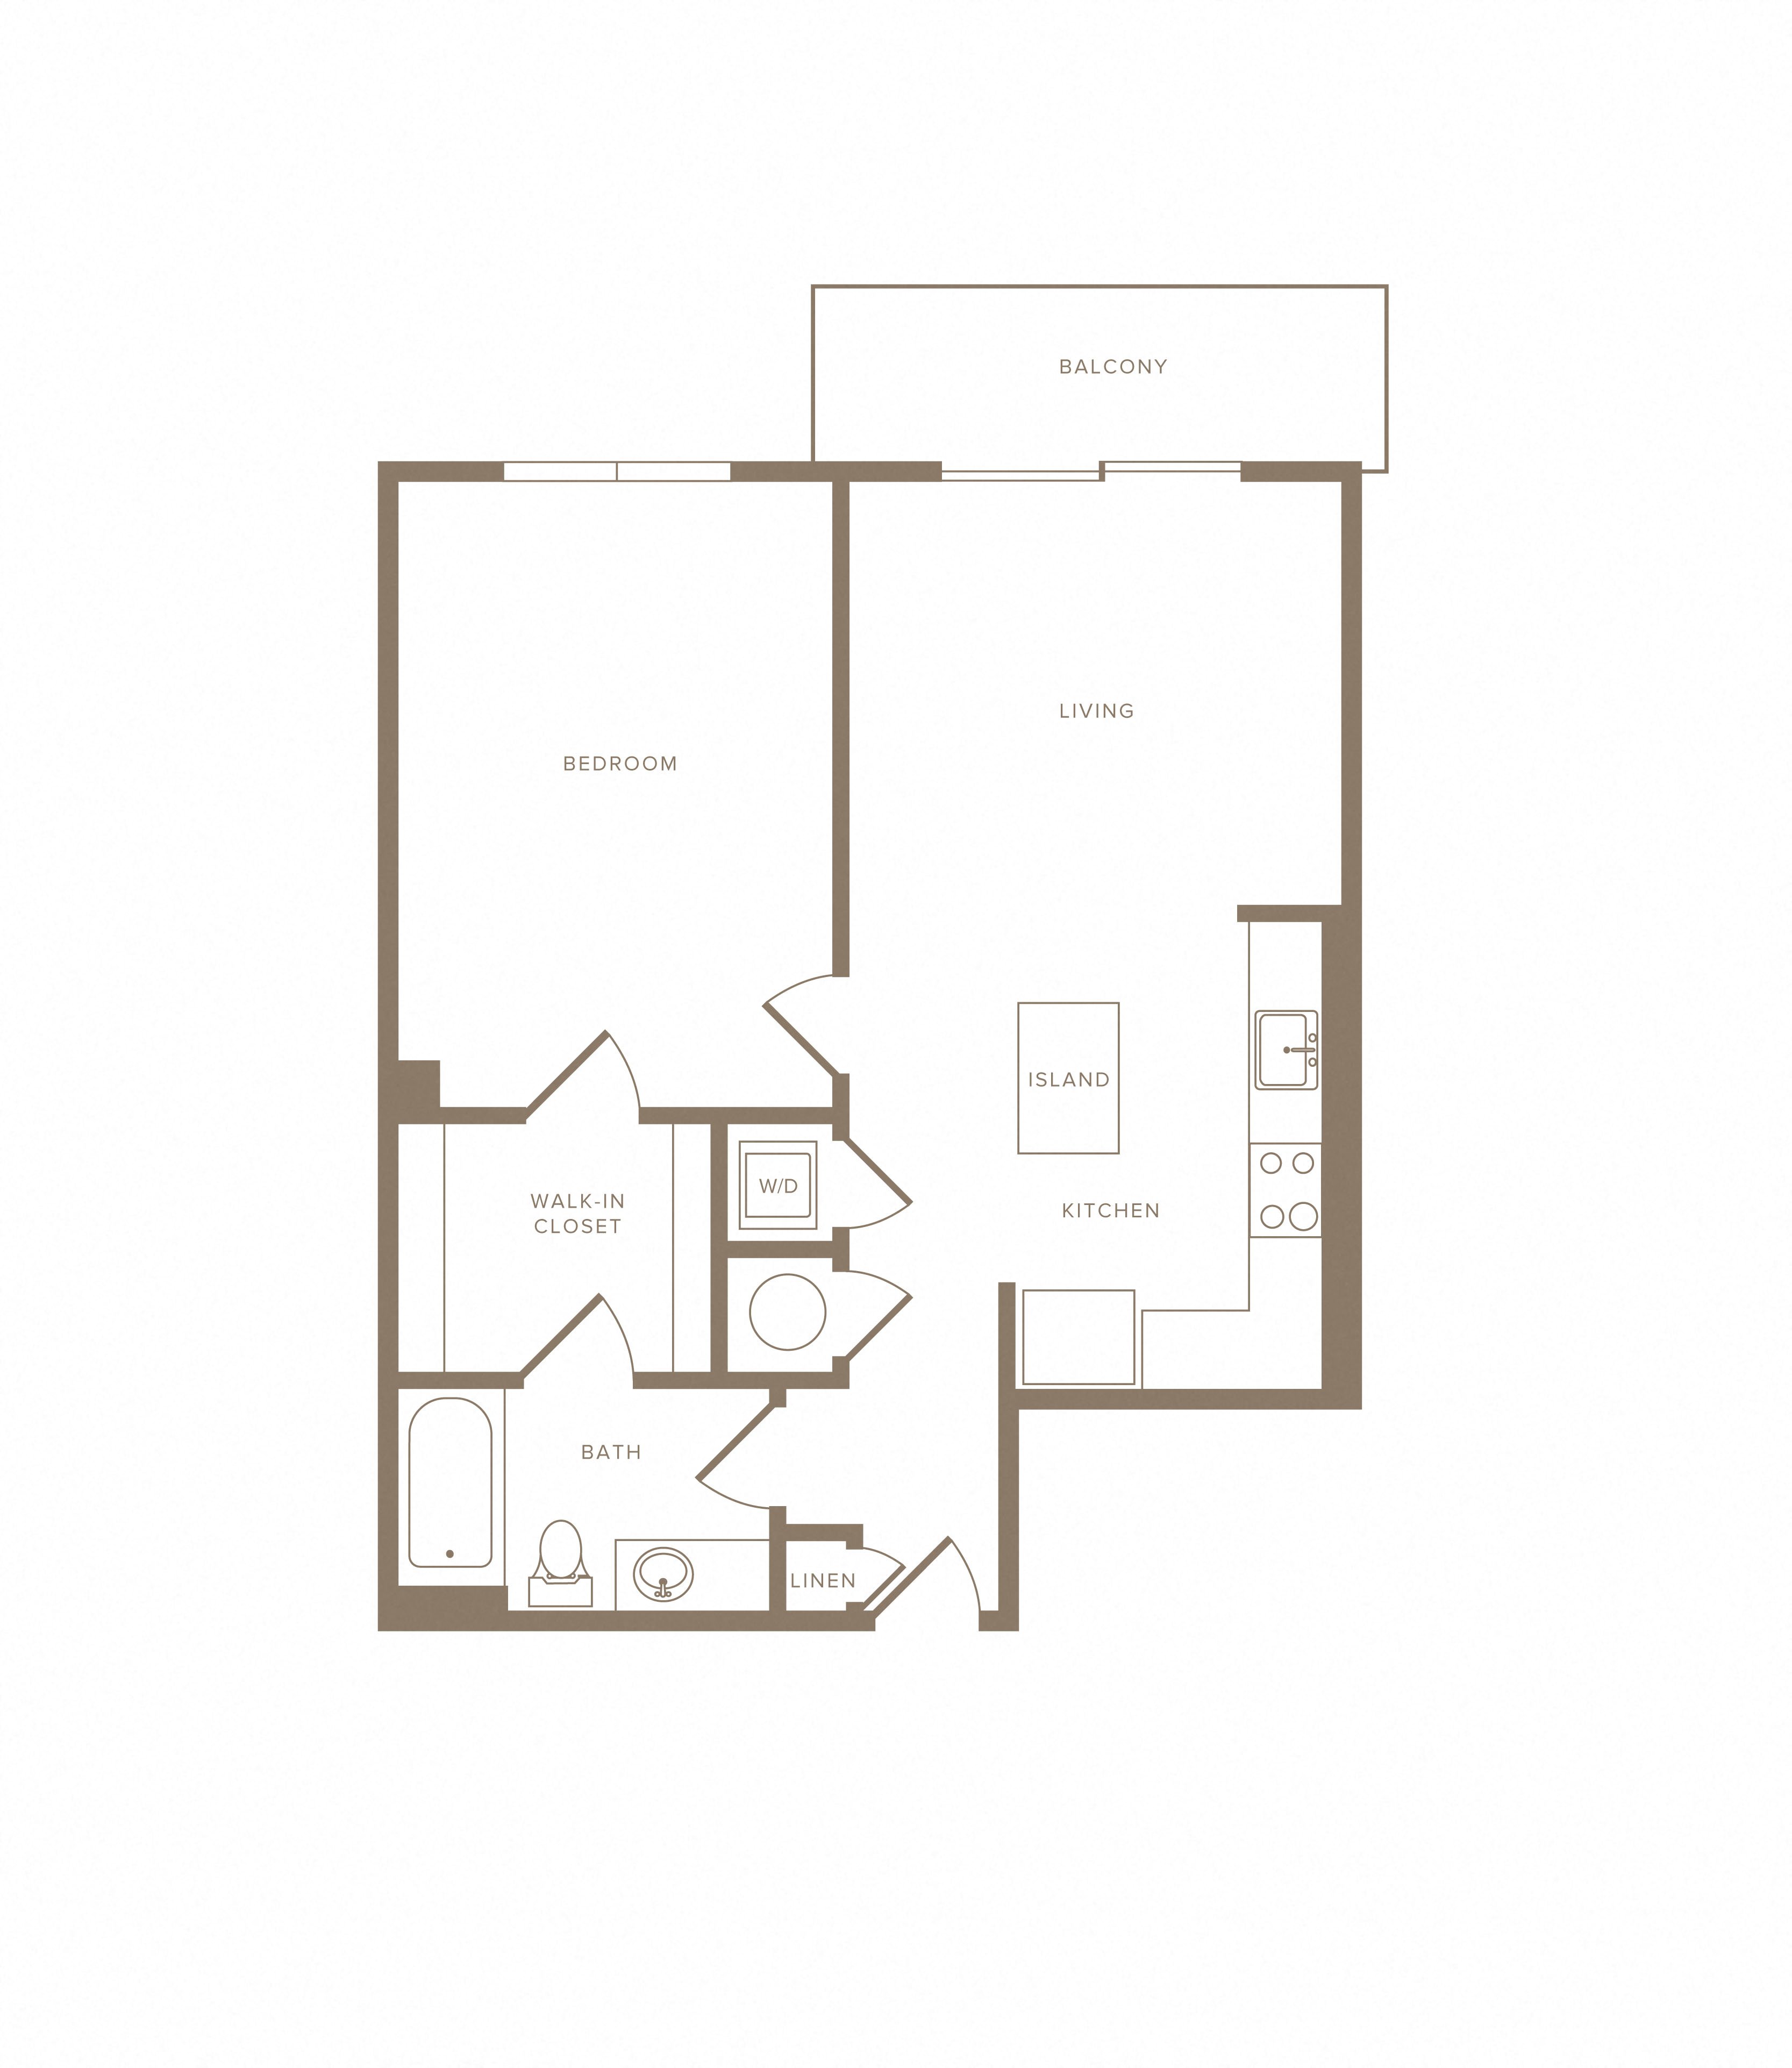 Apartment C-406 floorplan